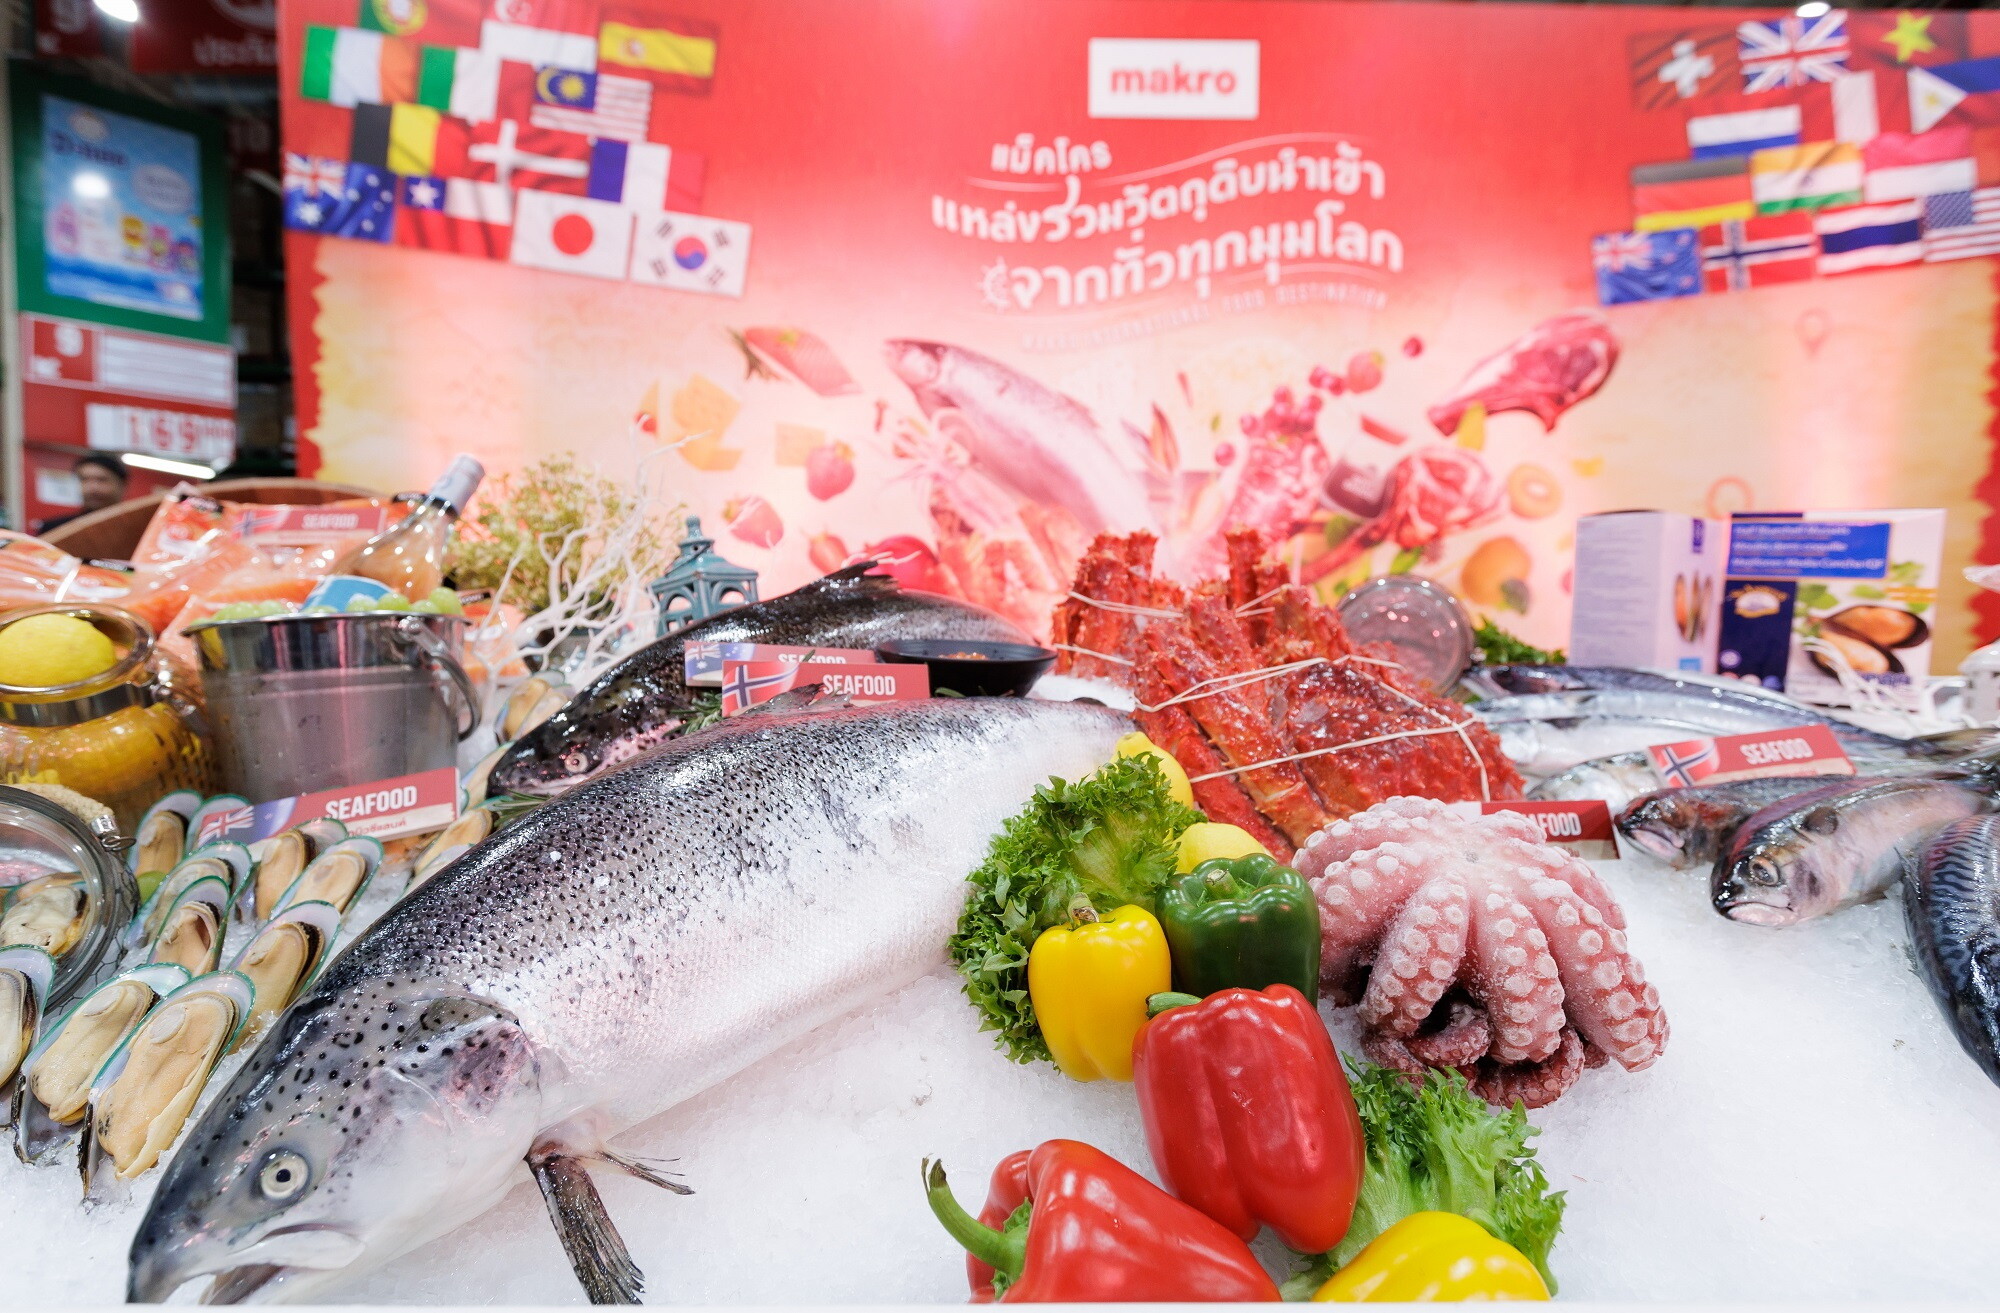 แม็คโครร่วมมือกับสภาอุตสาหกรรมอาหารทะเลนอร์เวย์ (NSC) ส่งตรงแซลมอนสดใหม่ ถึงมือผู้ประกอบการและลูกค้าทั่วไทย